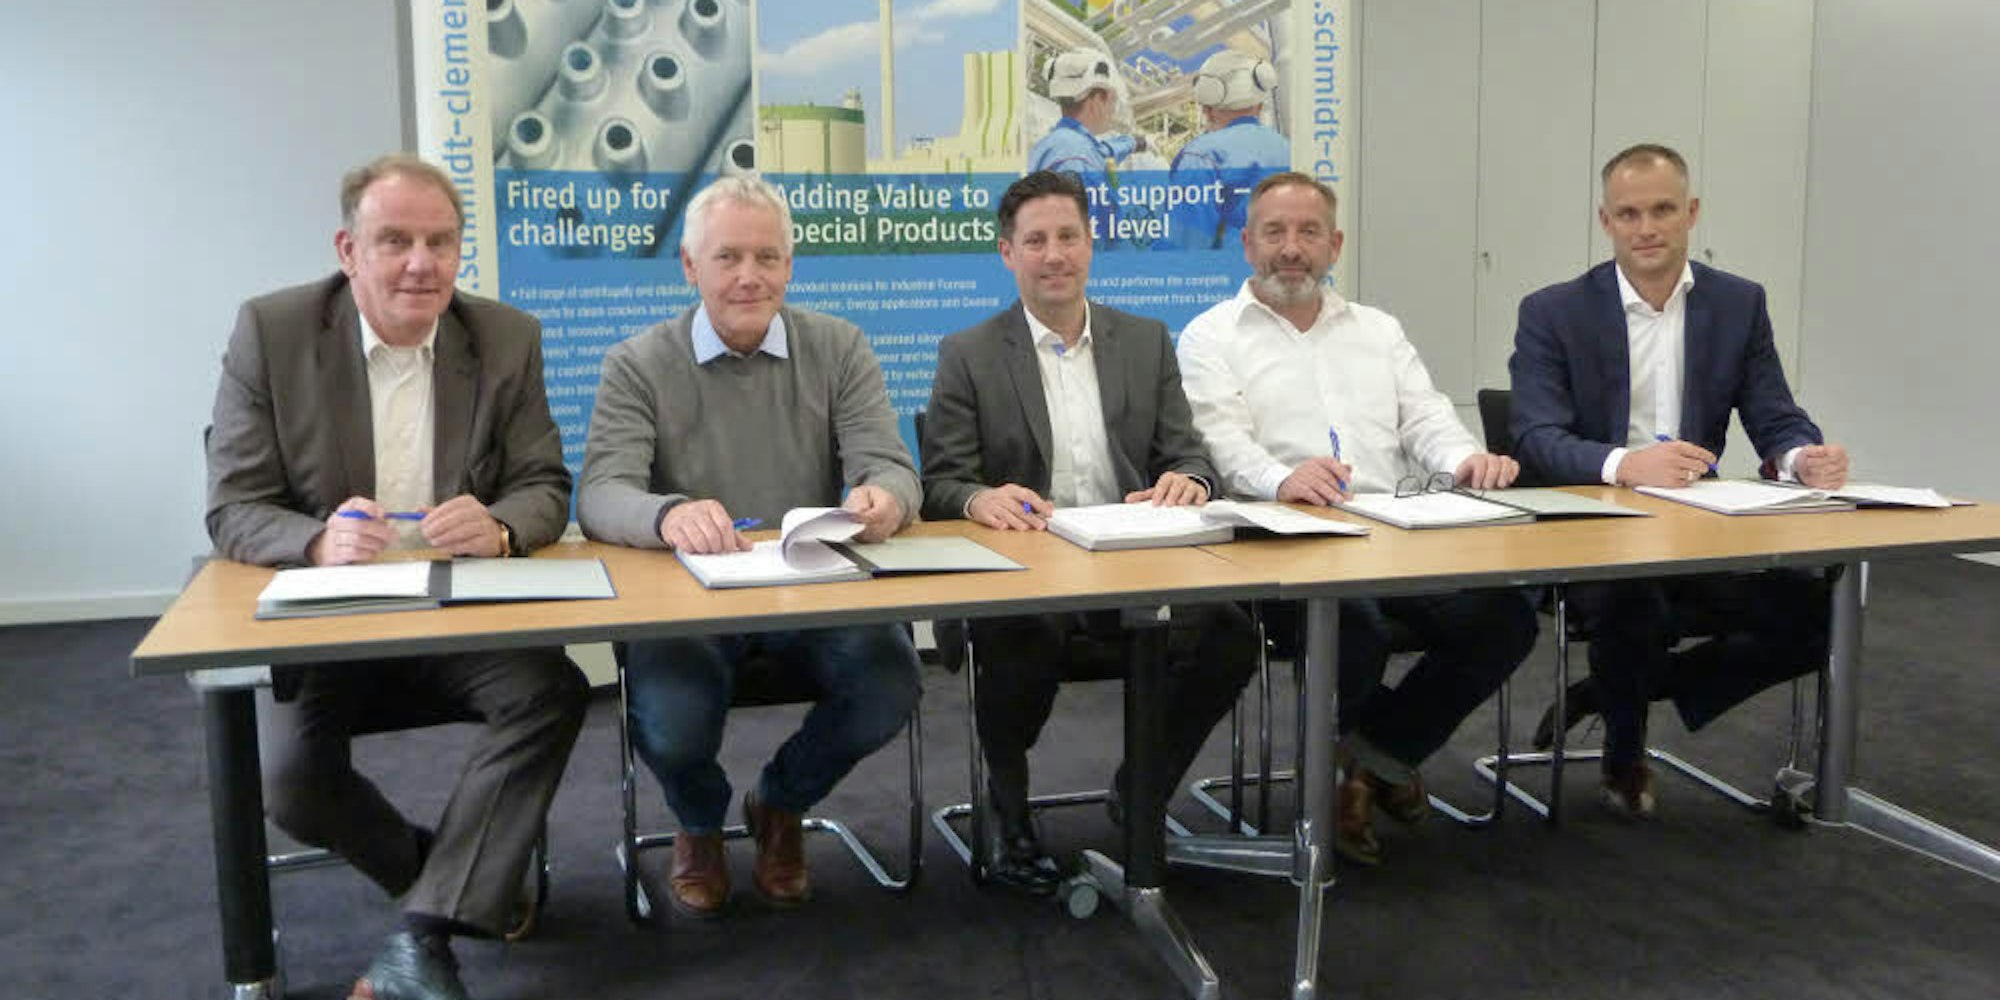 Sie unterschreiben den Vertrag: S+C-Personalleiter Ralf Welters, Werner Kusel (1. Bevollmächtigter IG Metall), Jan Schmidt-Krayer (geschäftsführender Gesellschafter S+C), Thomas Geilhaupt (S+C-Betriebsratsvorsitzender) und Dominic Otte (Geschäftsführer S+C) (v.l.).